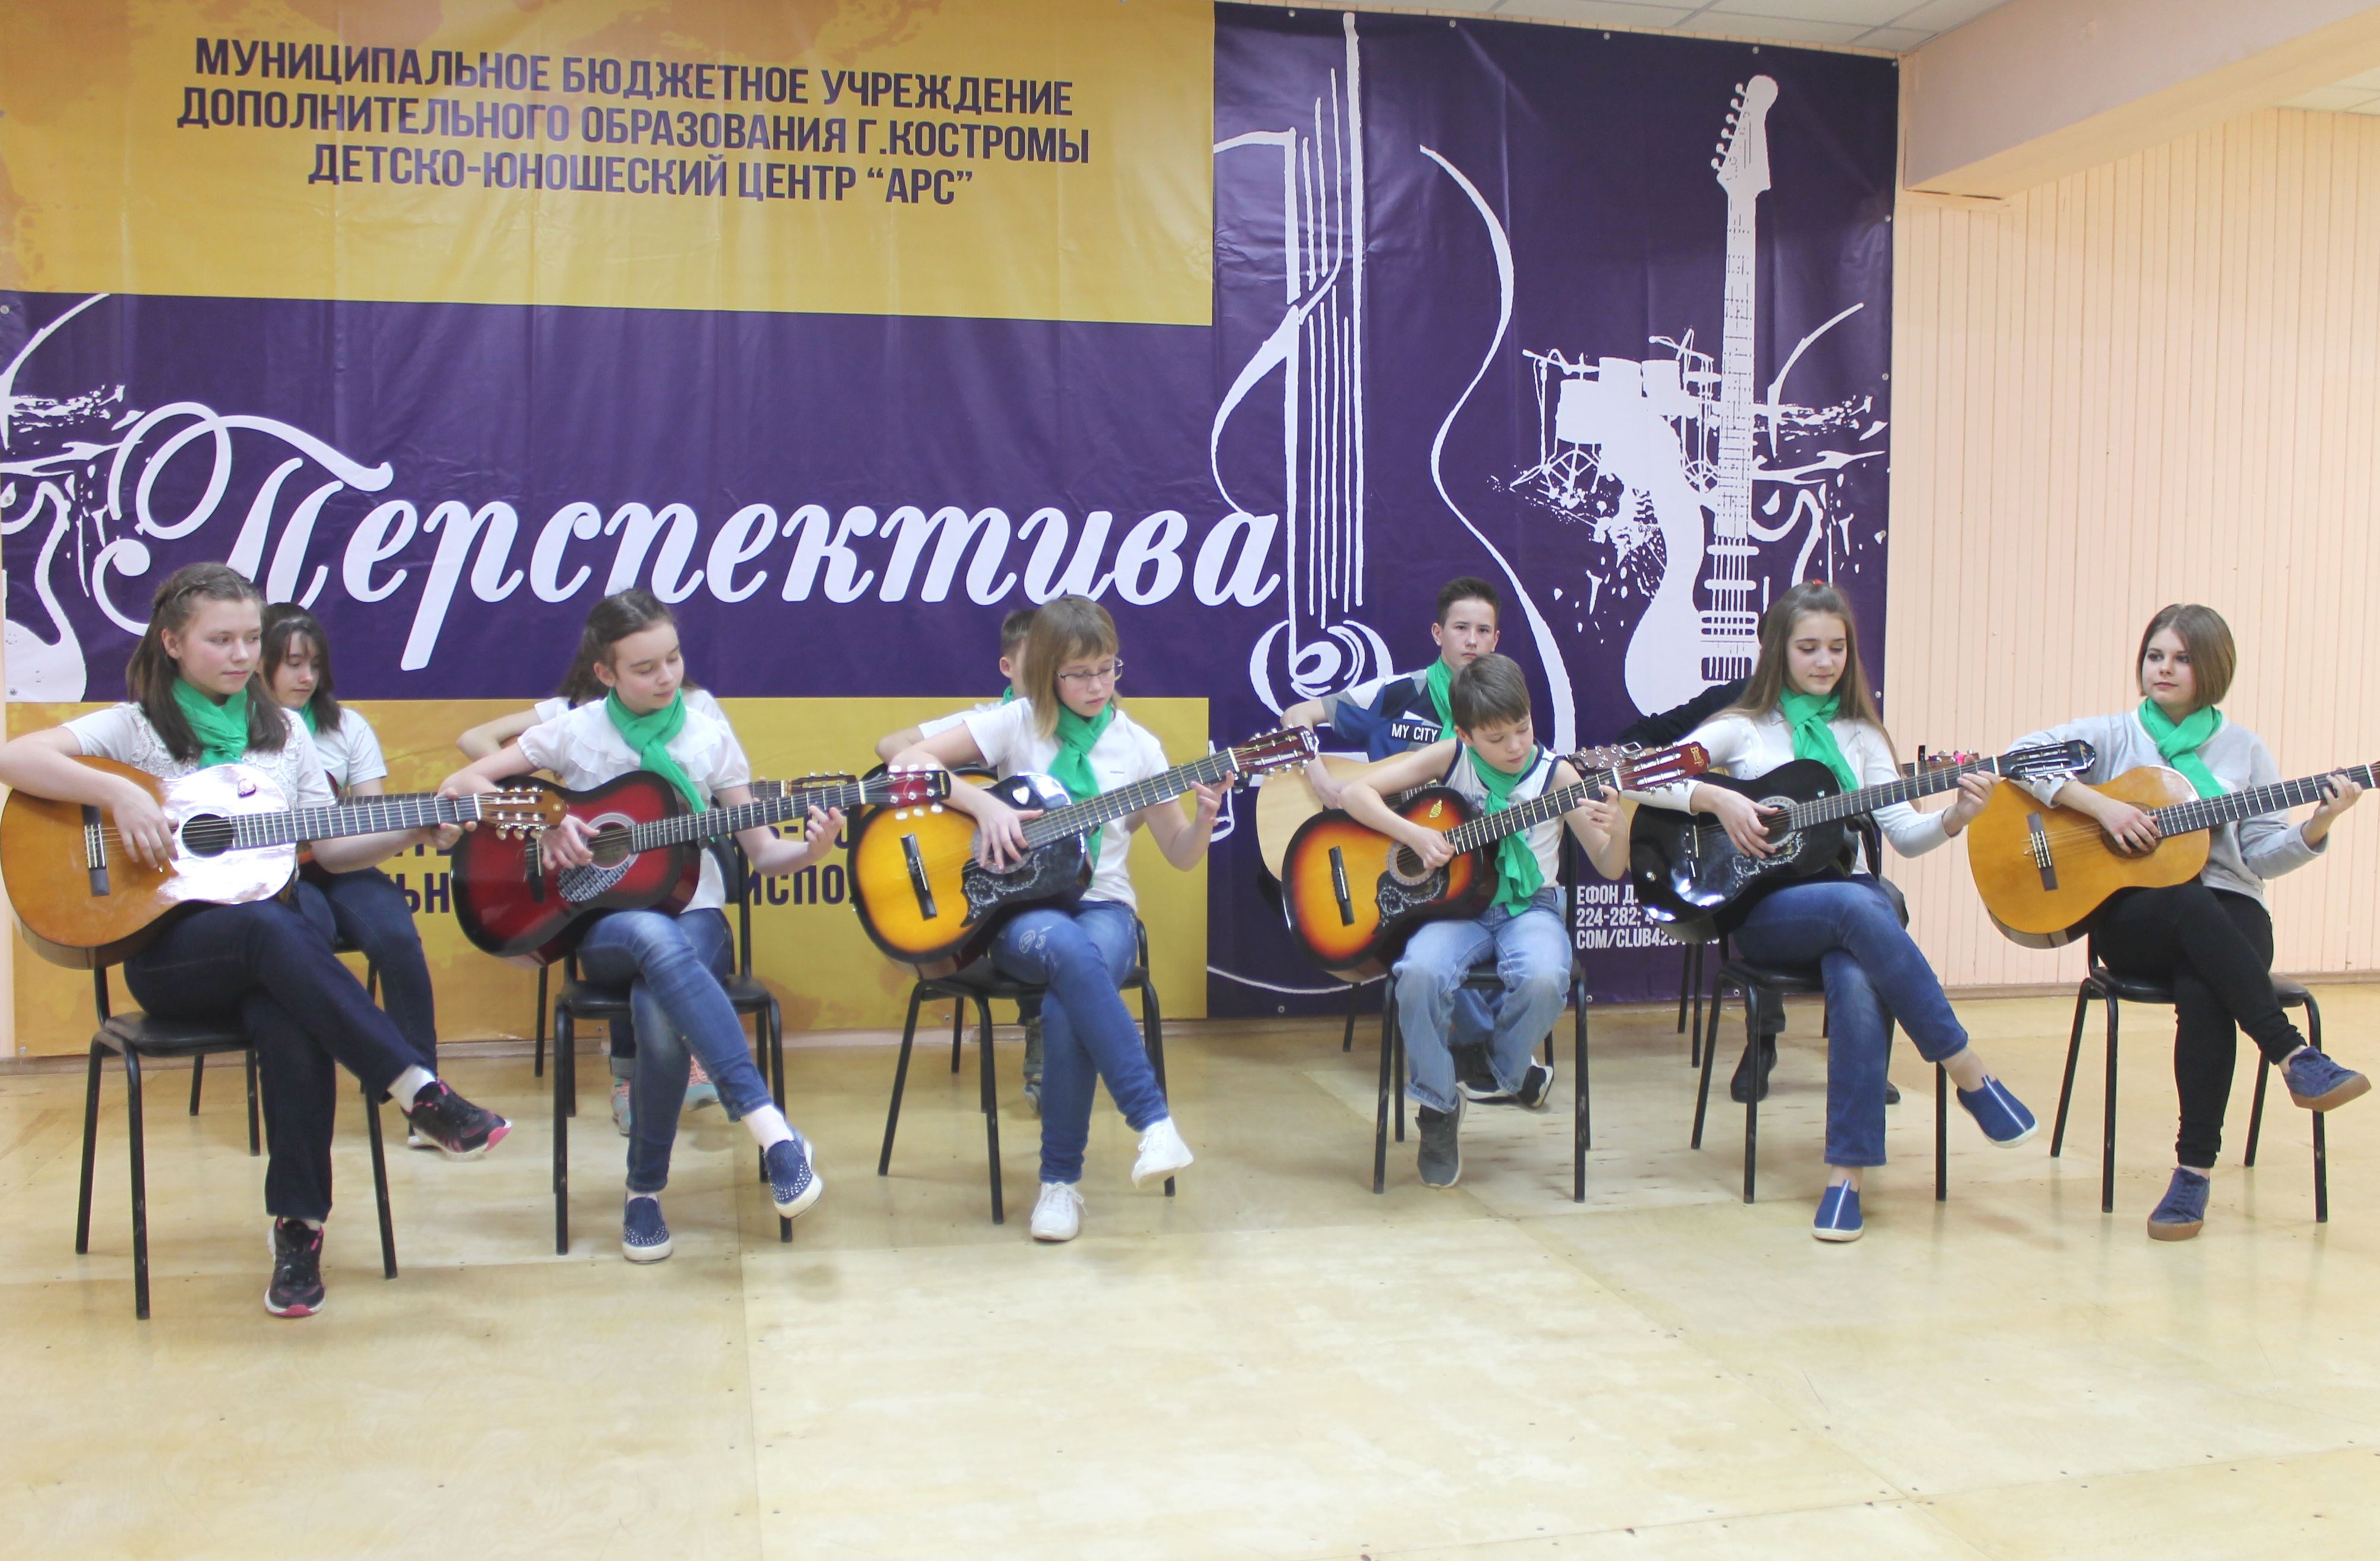 В Костроме проходит фестиваль “Перспектива”